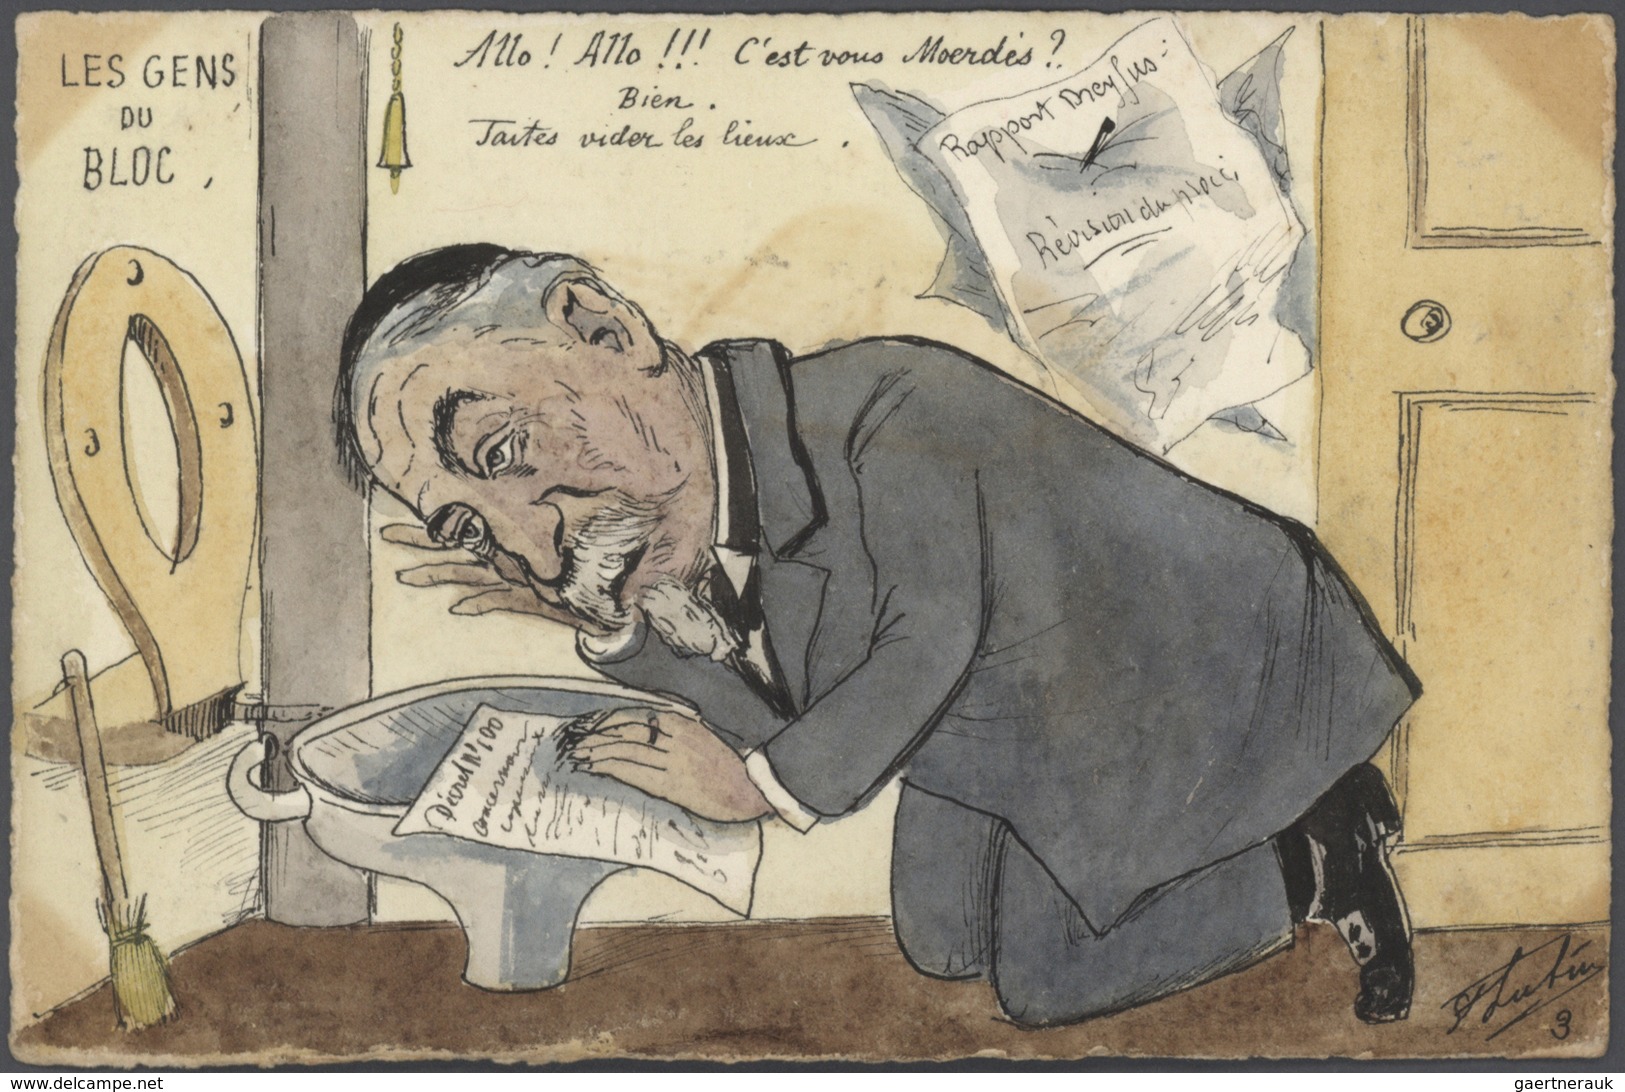 Ansichtskarten: Künstler / Artists: ST. LUFUY, Eine Sammlung von 63 handgemalten Karikaturen um 1905